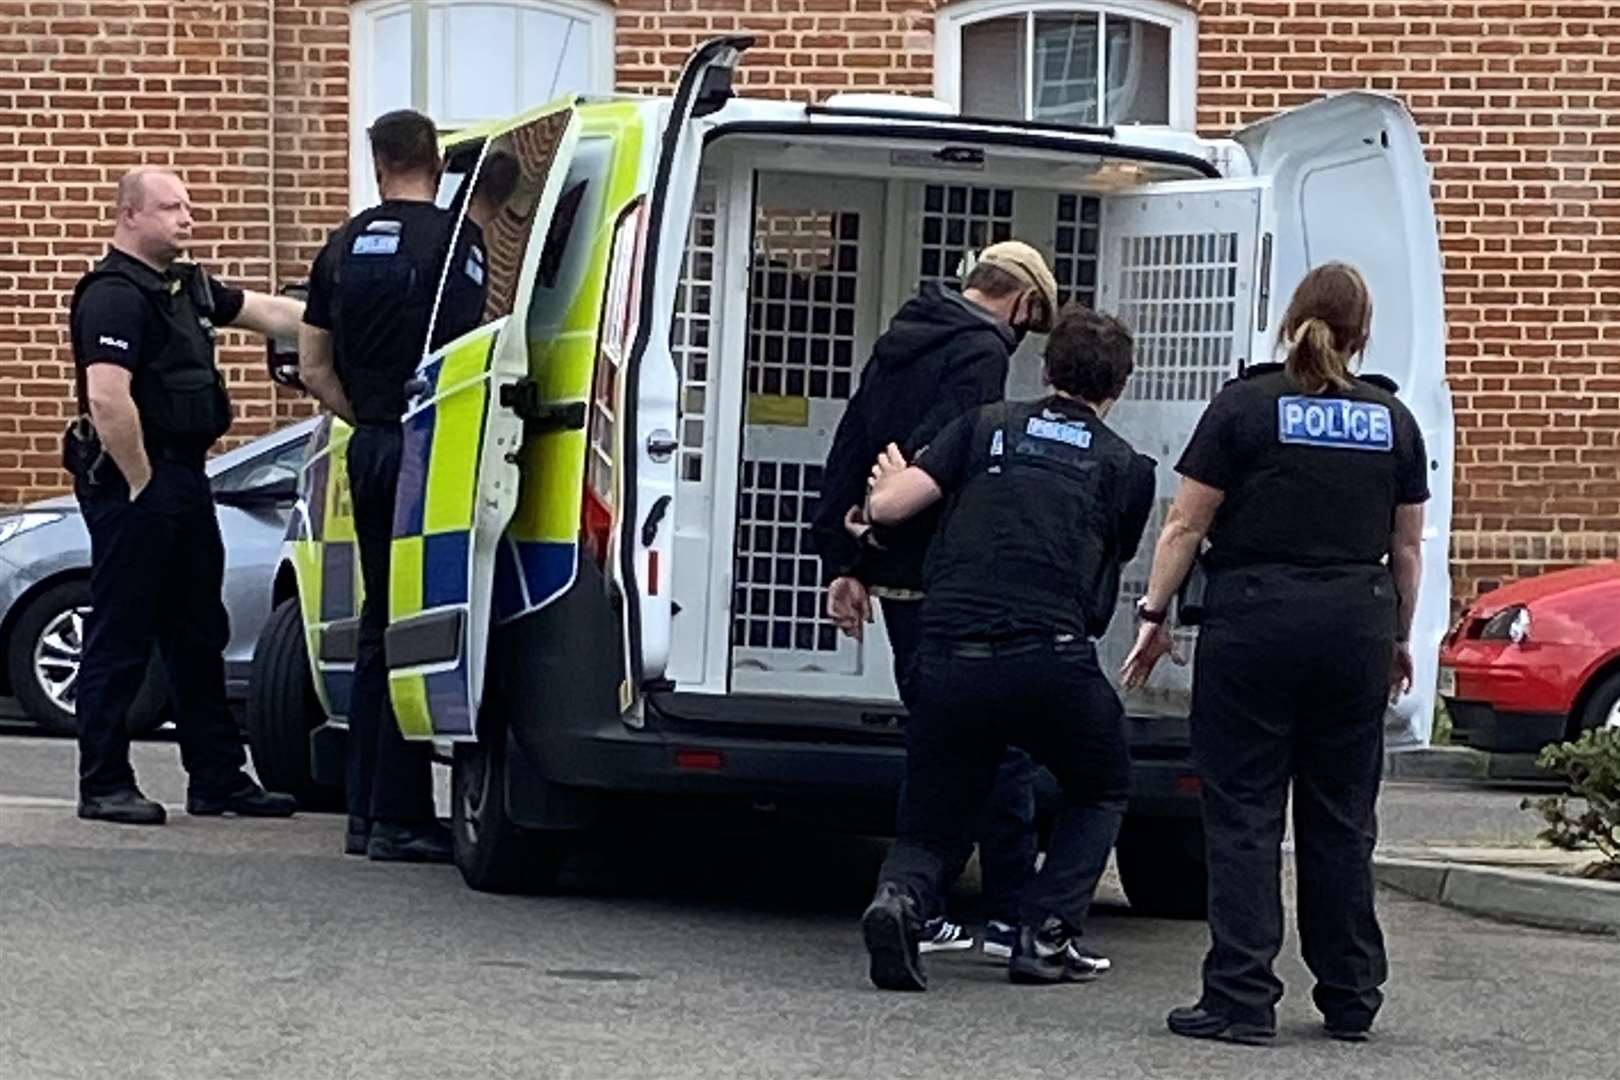 A man was escorted into a police van